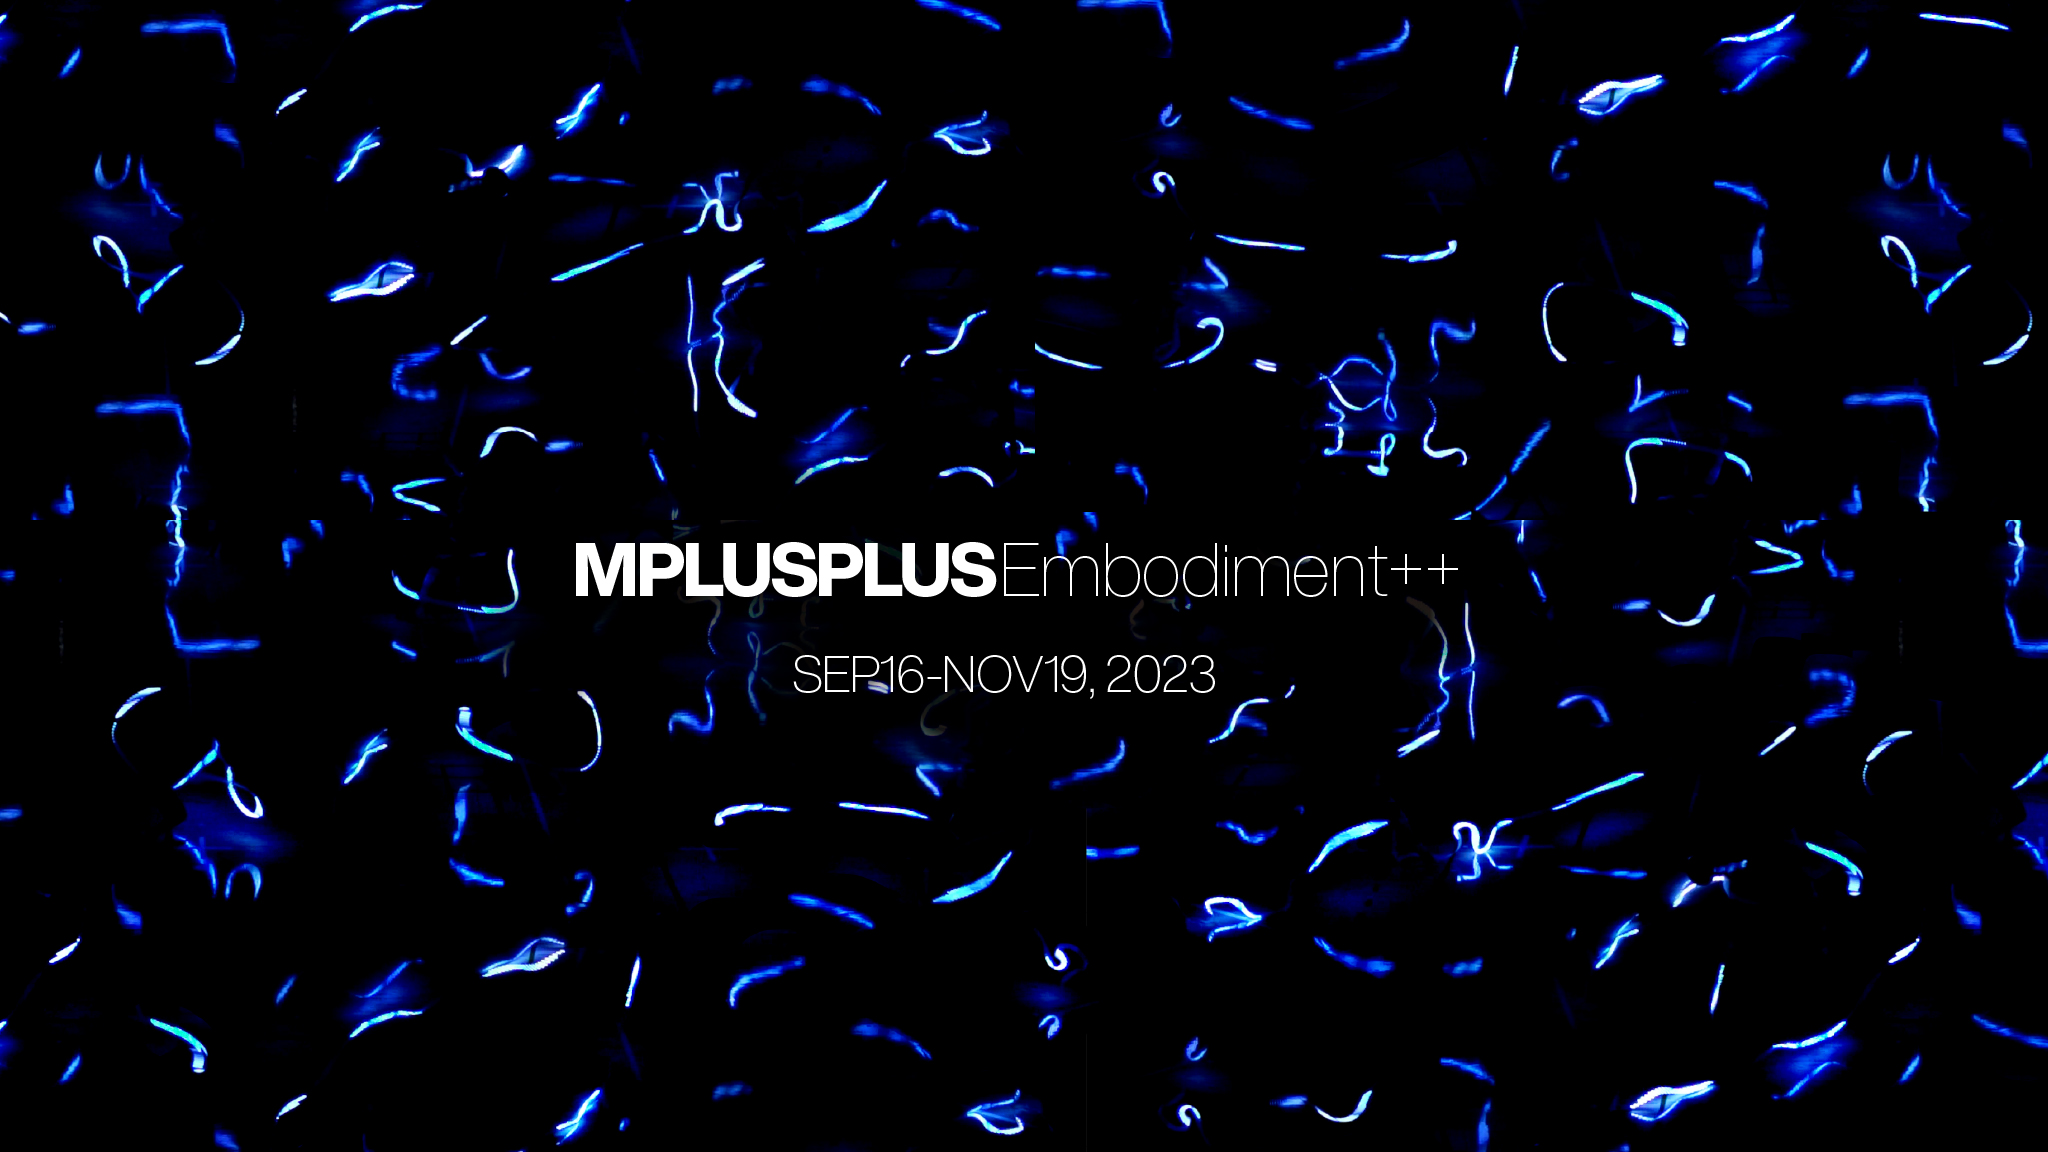 MPLUSPLUS “Embodiment++”